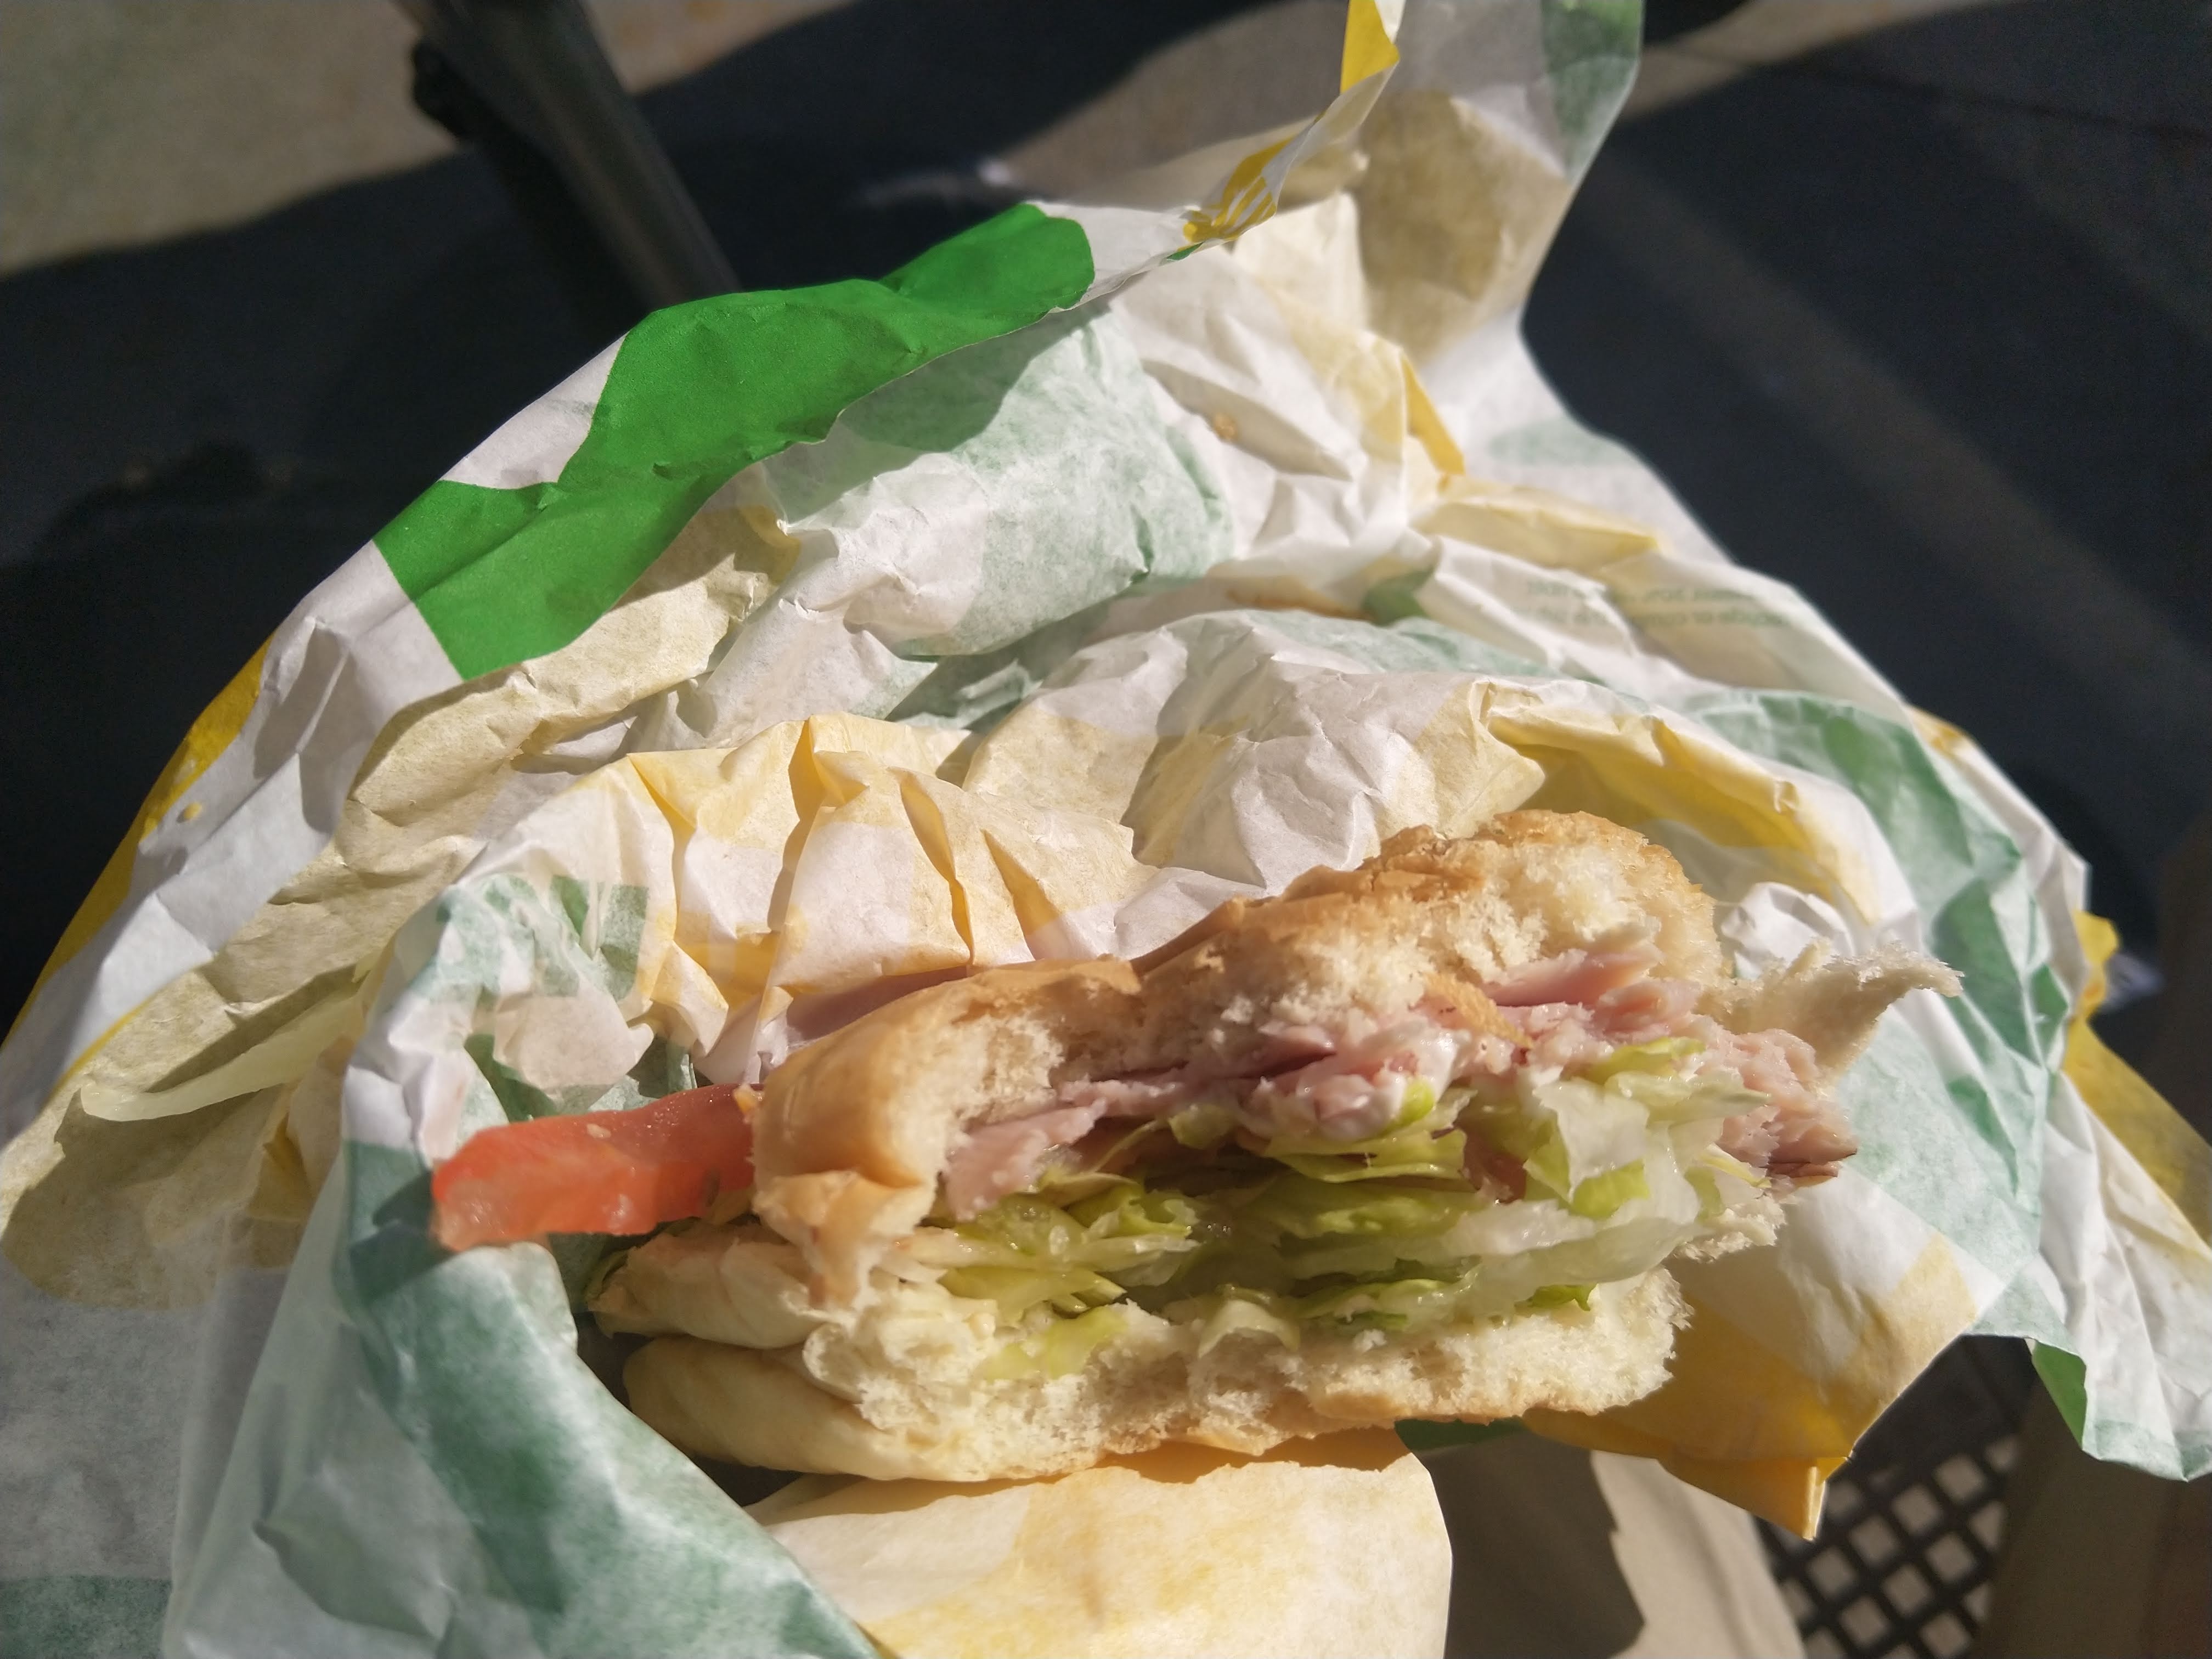 a half-eaten subway sandwich